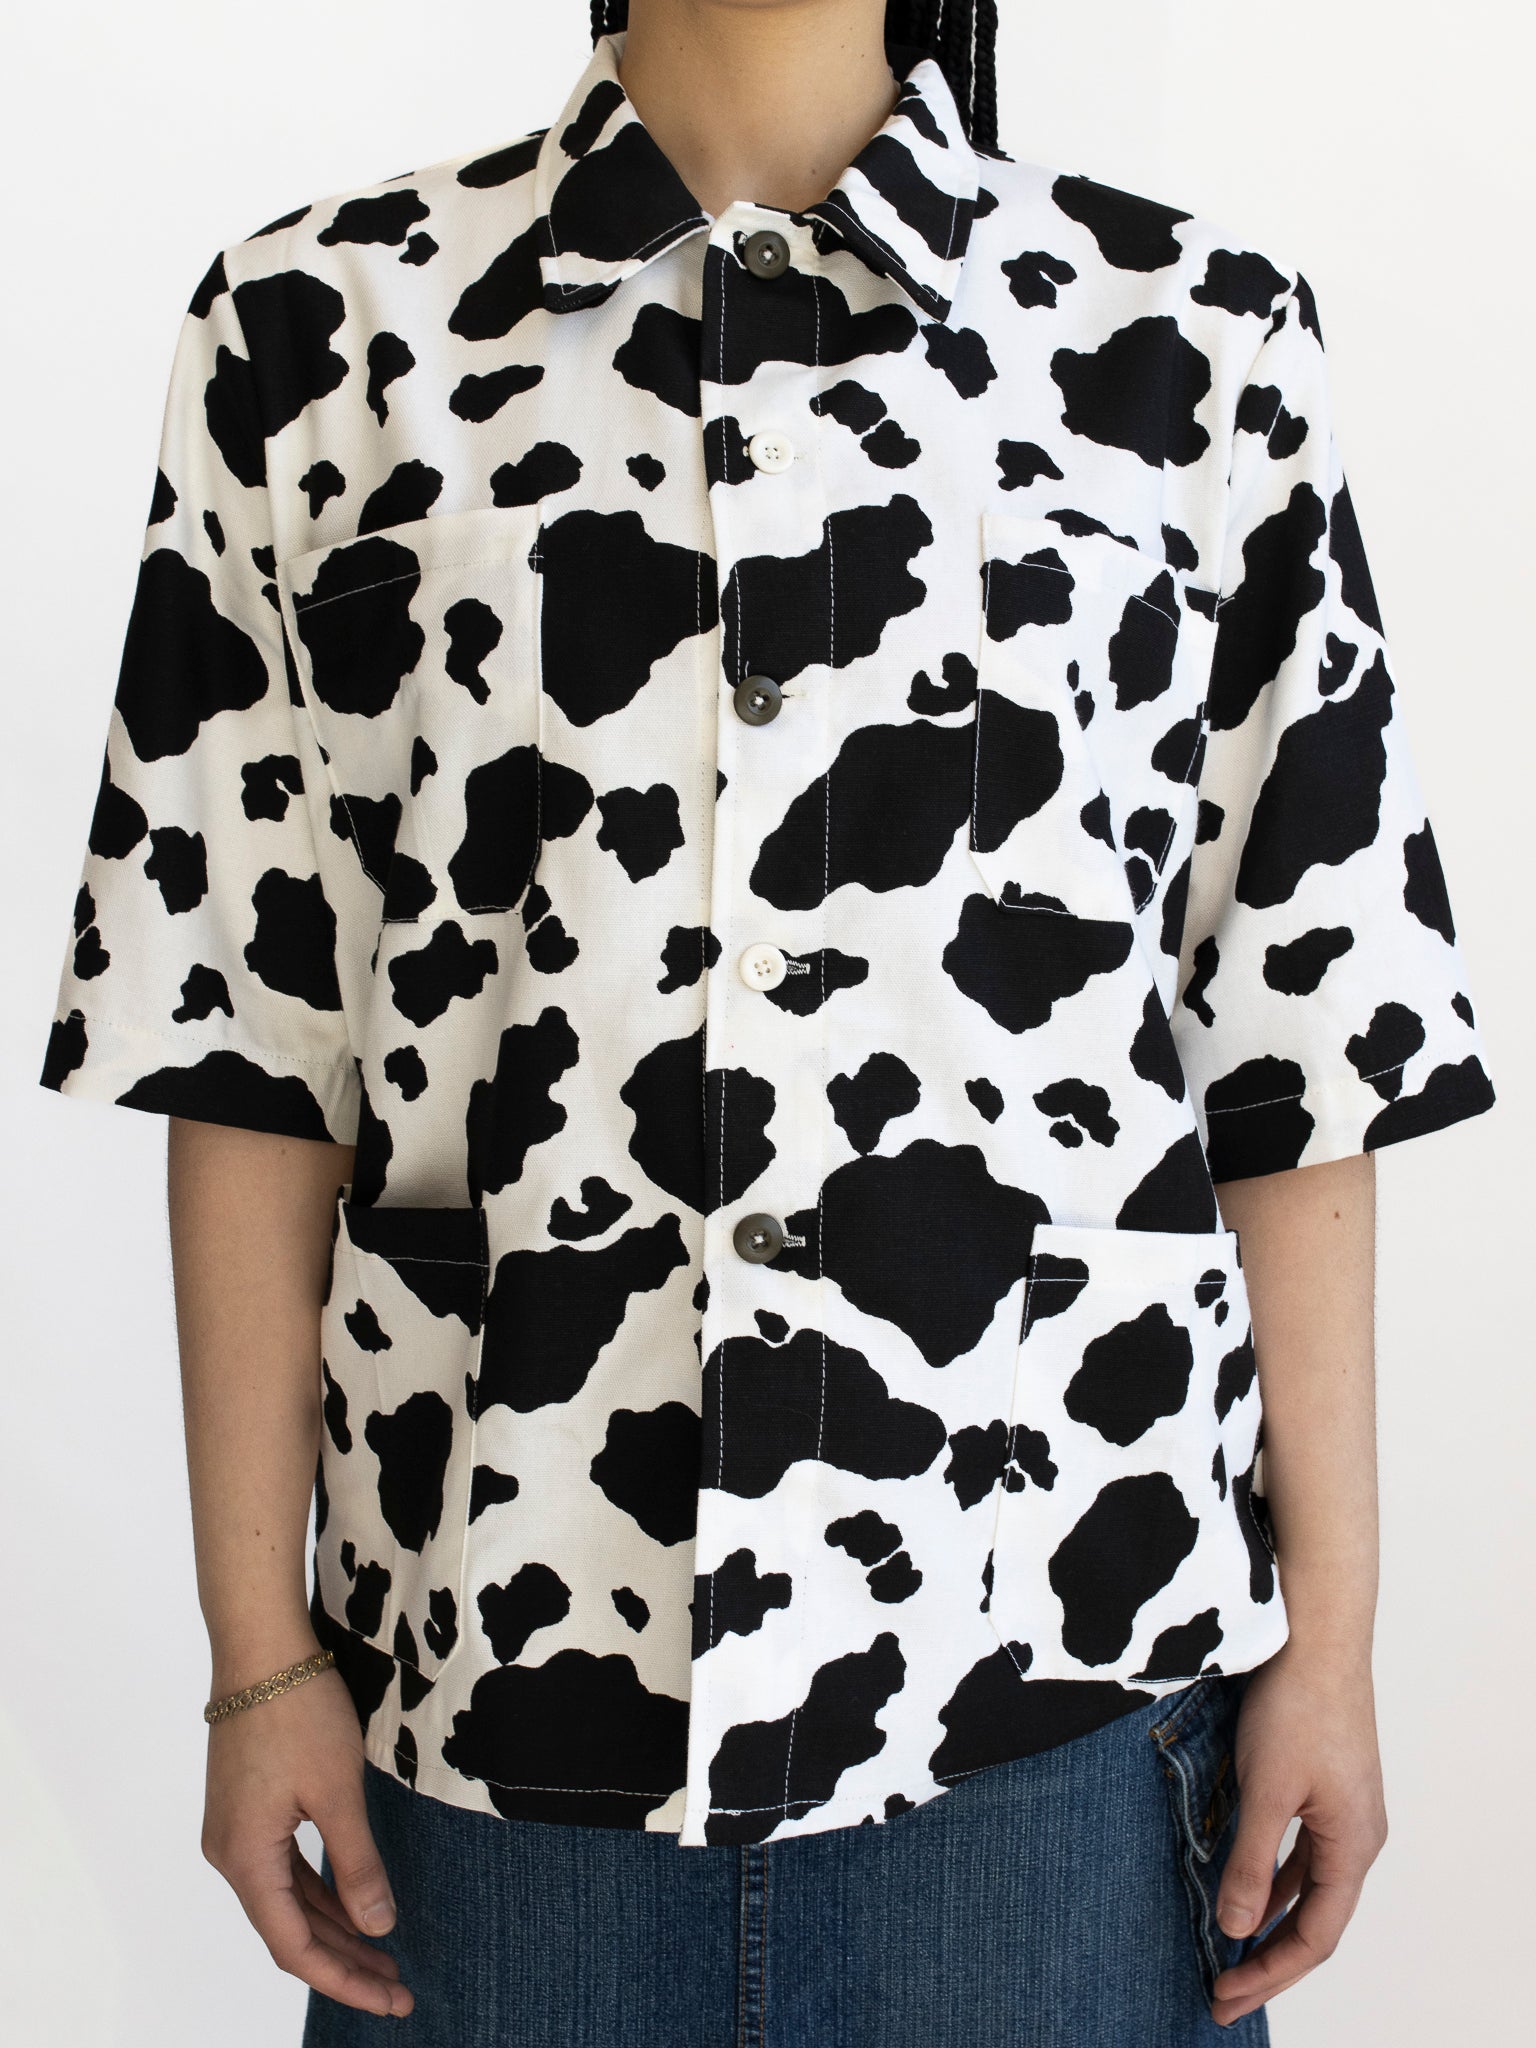 The Series - Cow Print Chore Shirt (L)